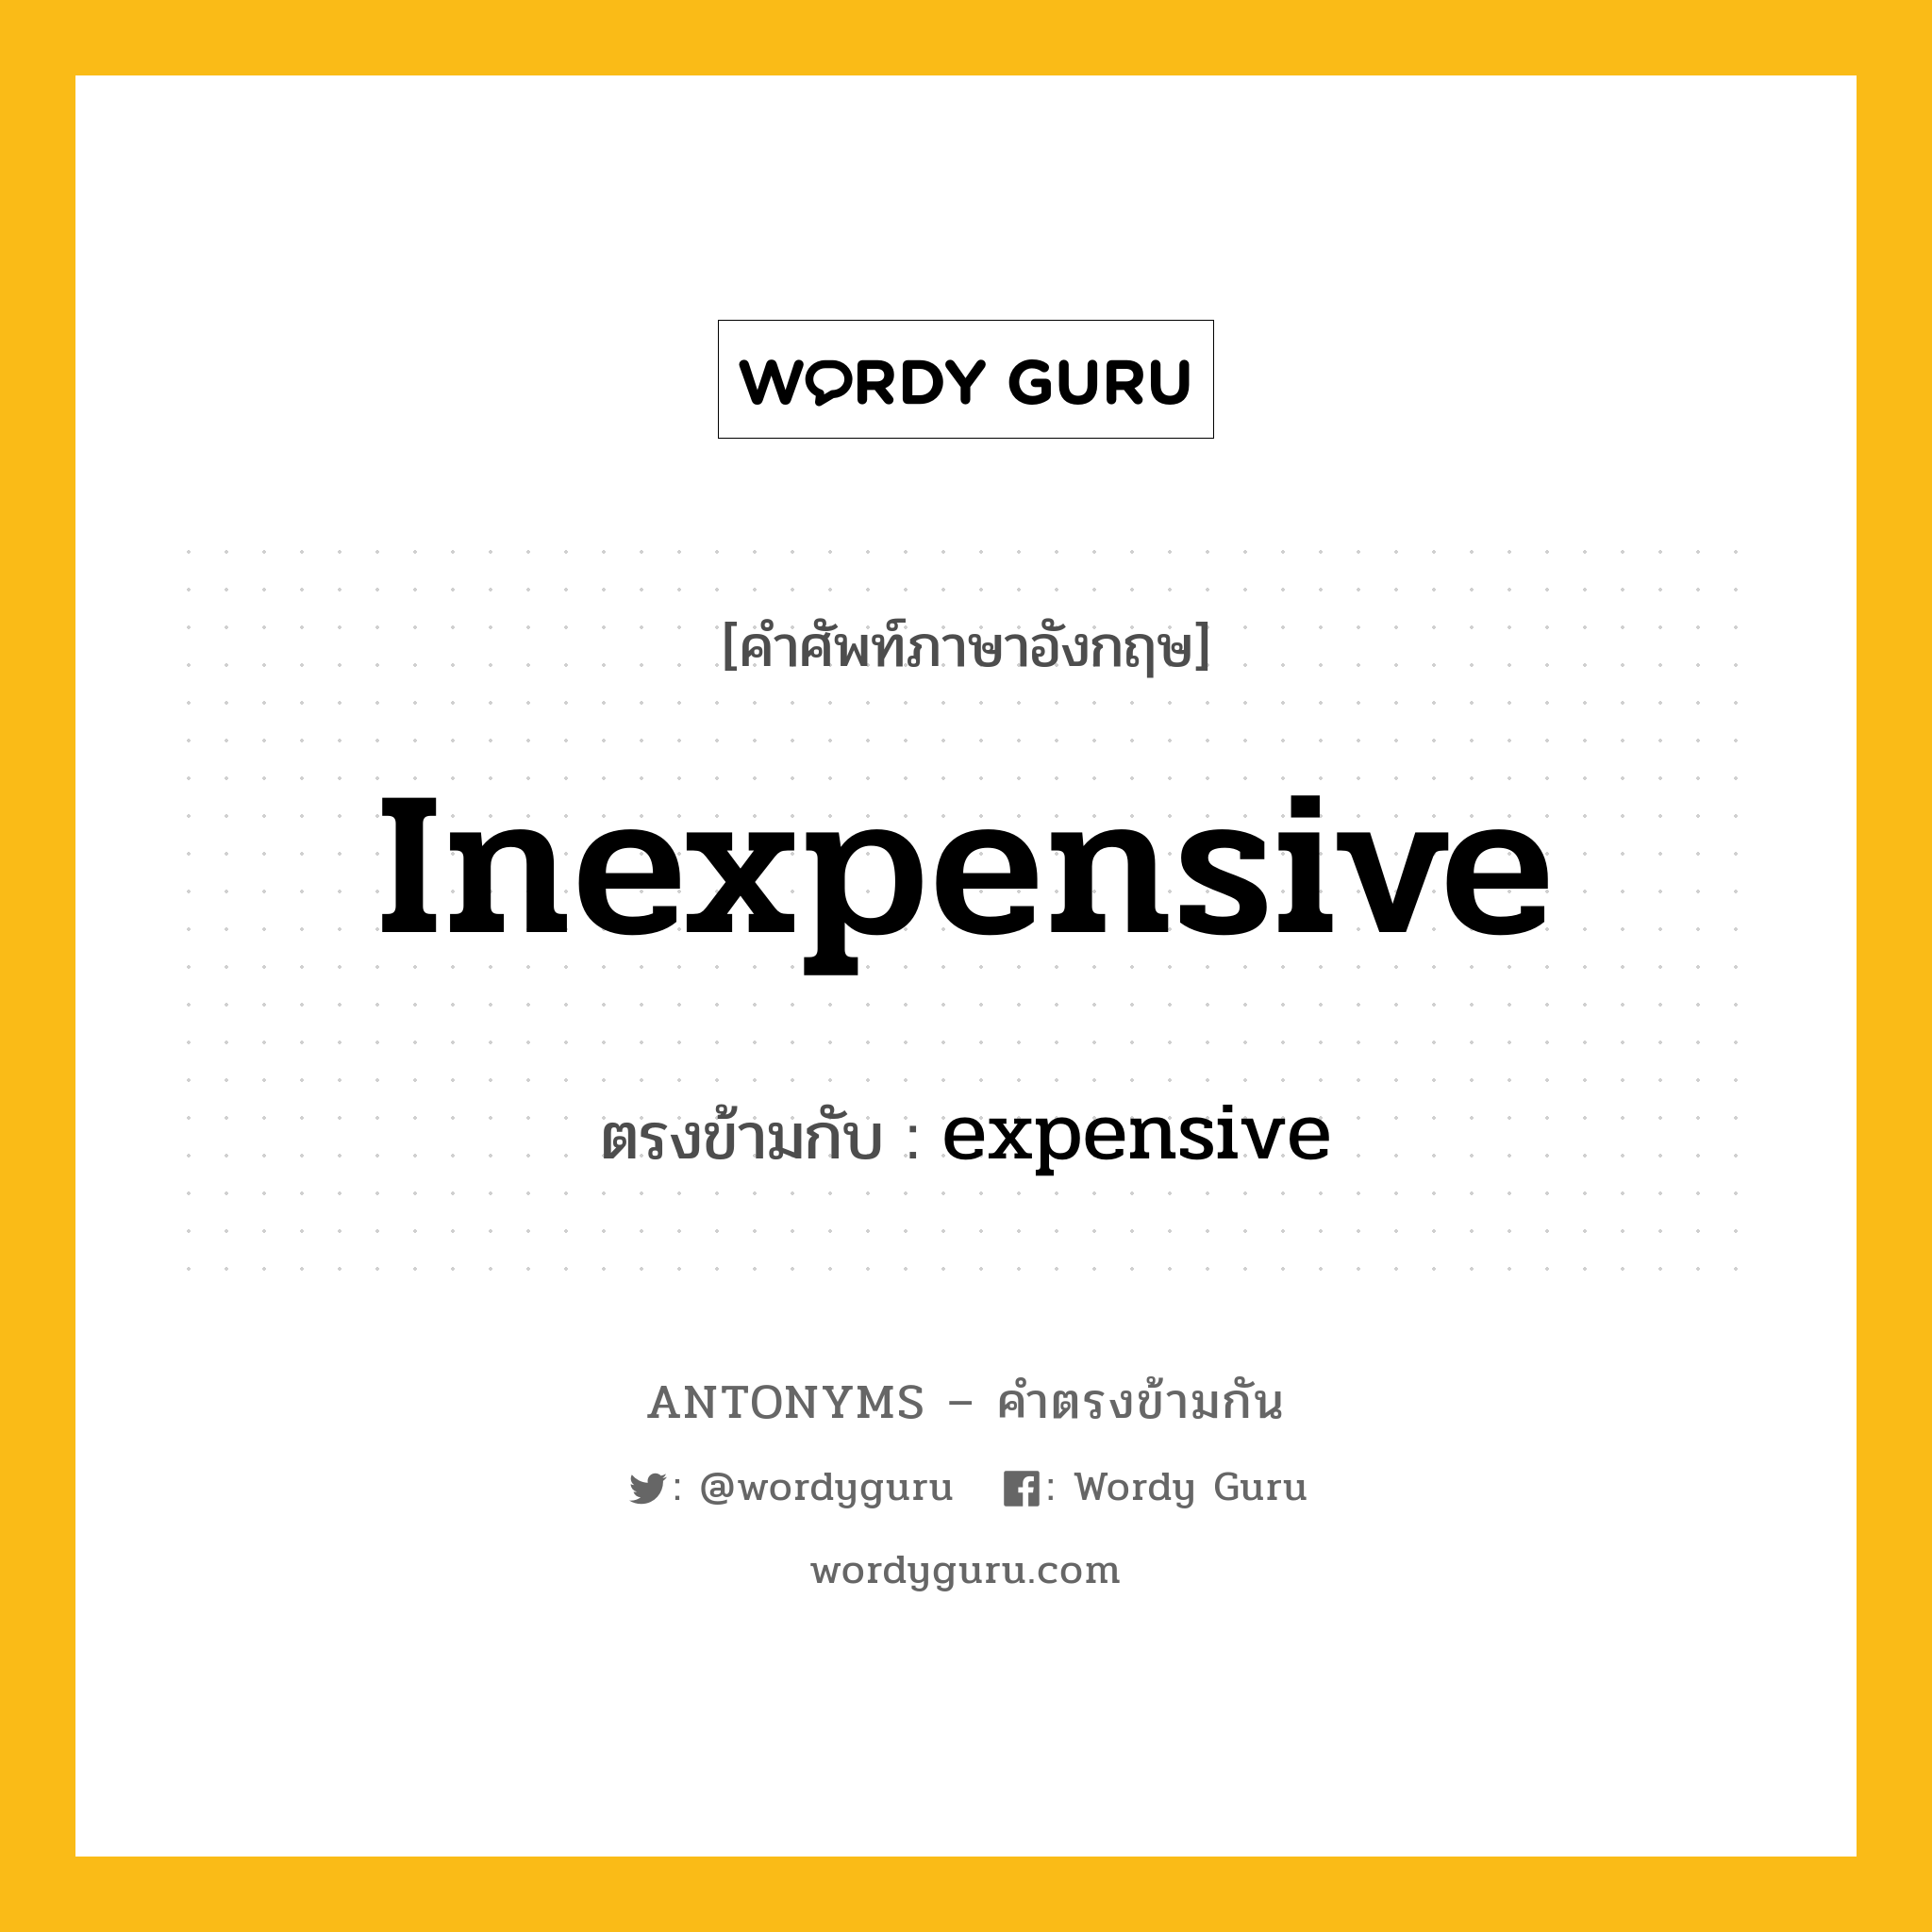 inexpensive เป็นคำตรงข้ามกับคำไหนบ้าง?, คำศัพท์ภาษาอังกฤษ inexpensive ตรงข้ามกับ expensive หมวด expensive